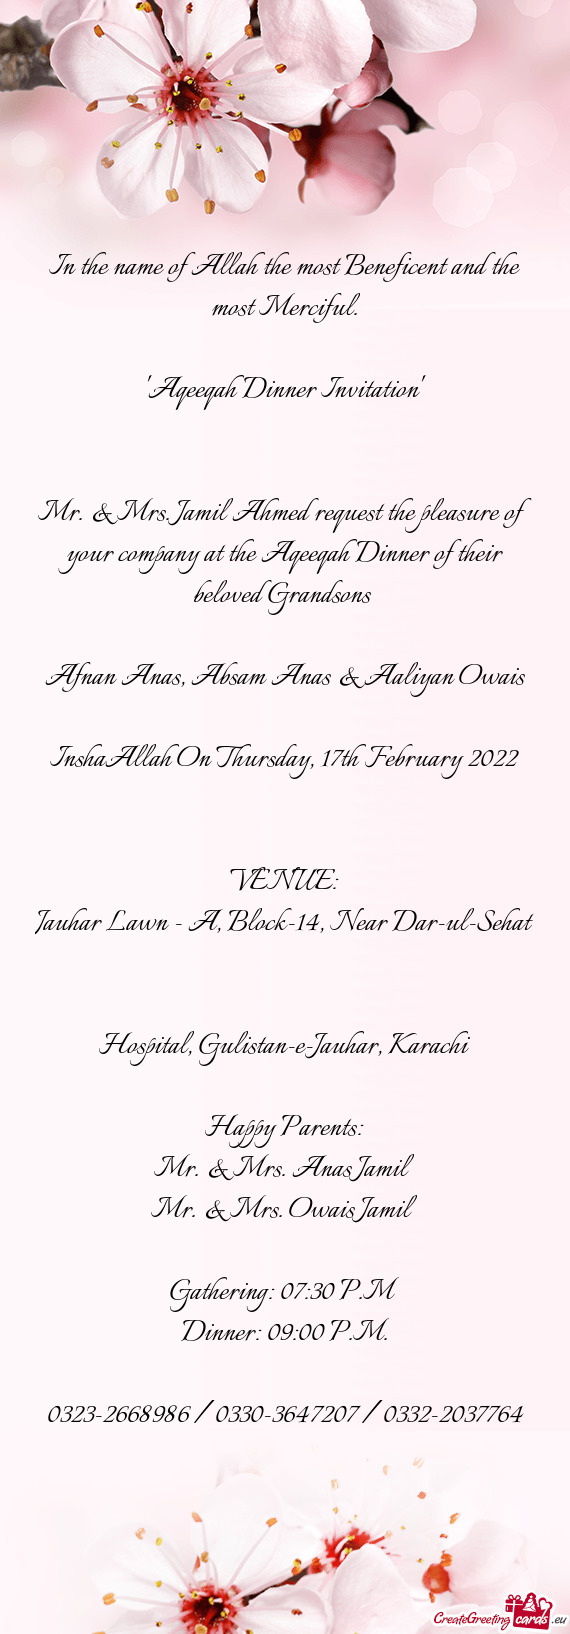 InshaAllah On Thursday, 17th February 2022